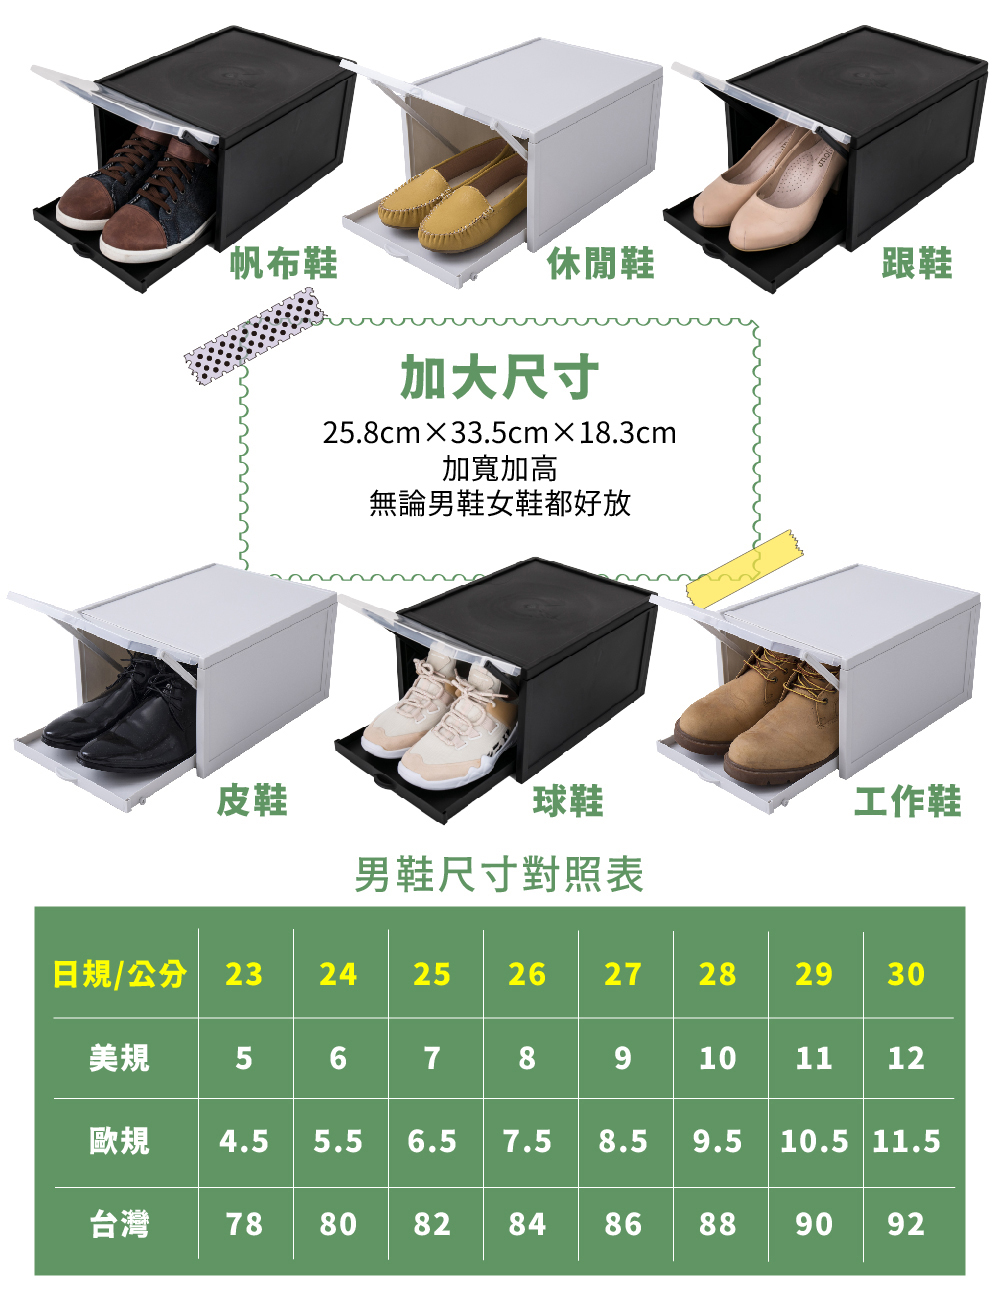 【FL生活+】超耐重自動掀蓋組合式鞋盒 淺米灰/夜幕黑 (FL-226x4)